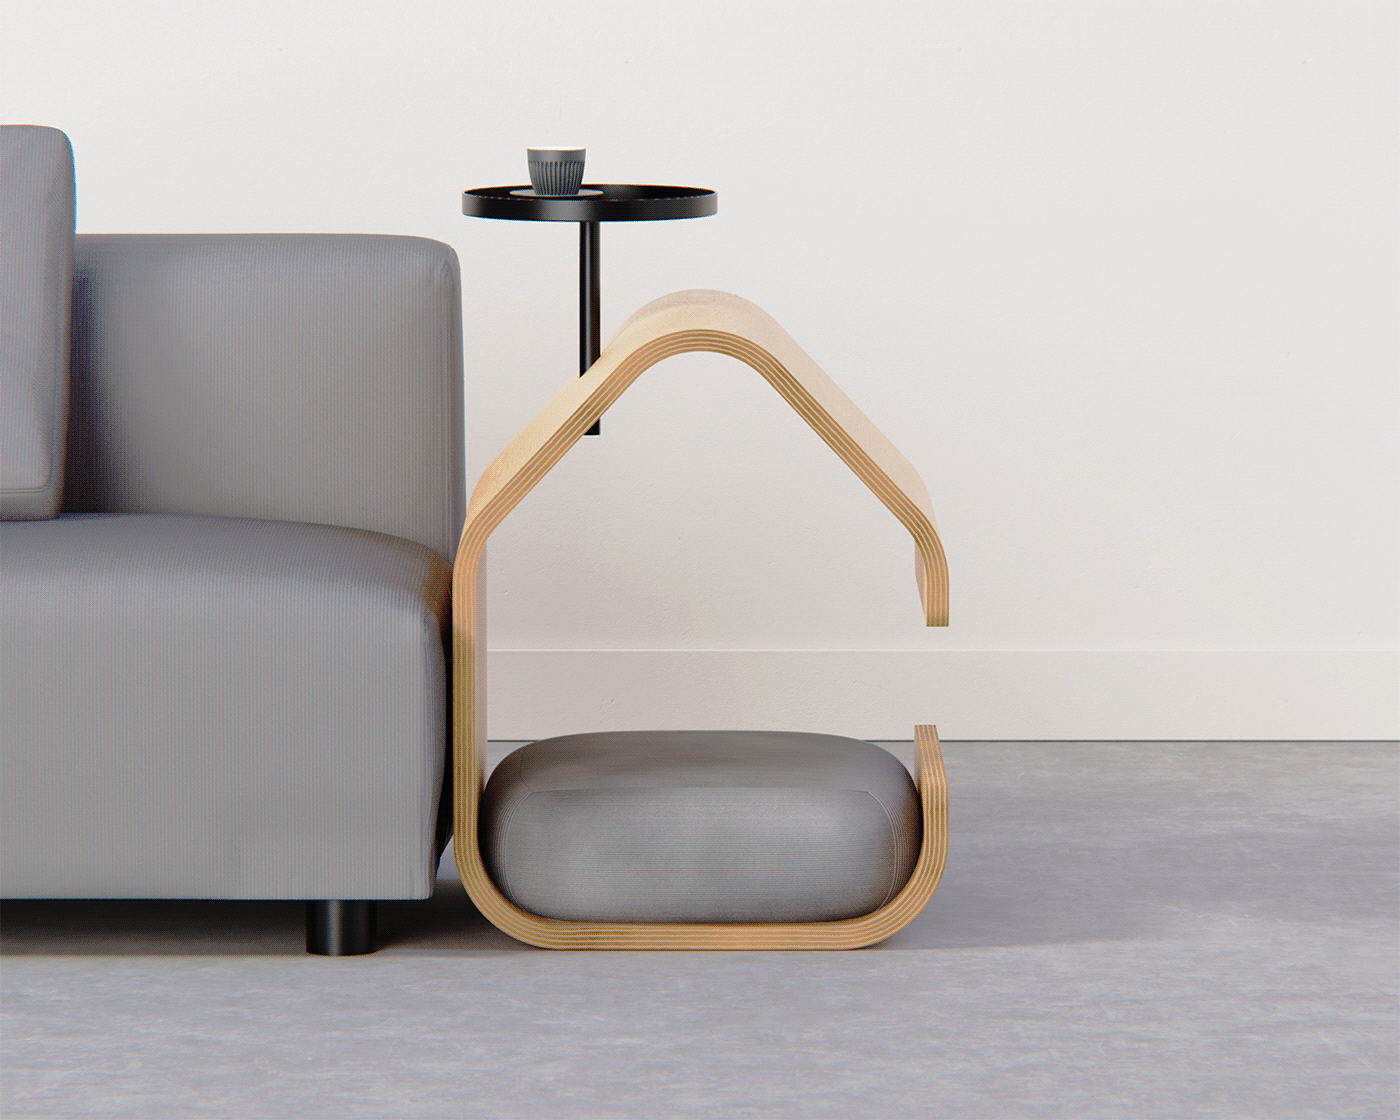 keyshot plywood furniture industrial design  dog Cat living room cad product design  visualization